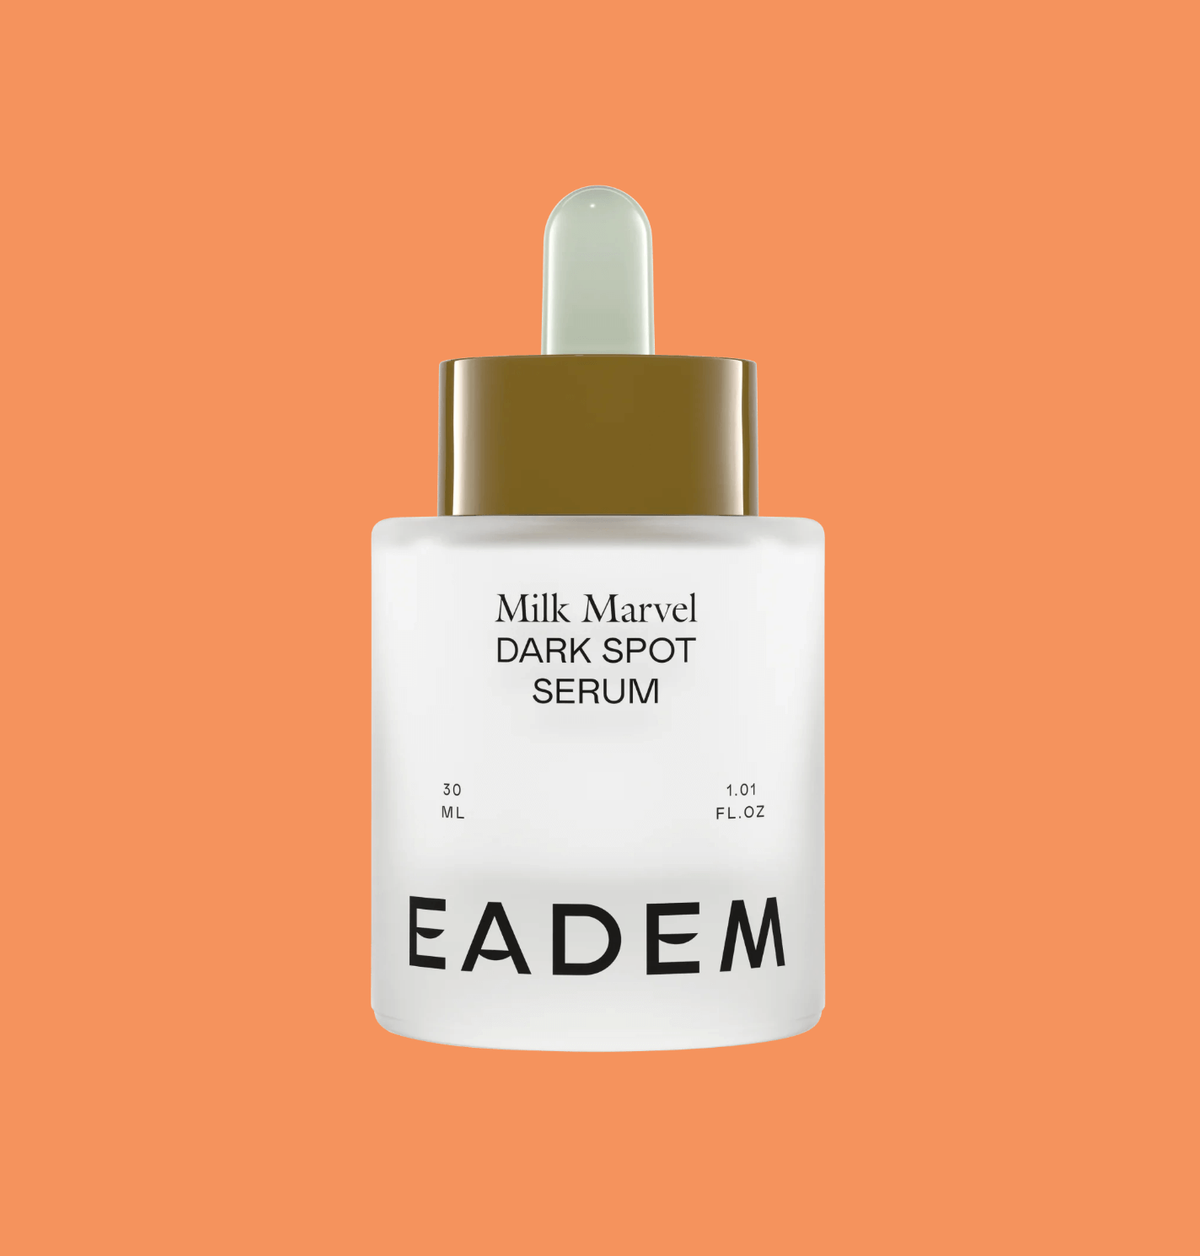 Eadem milk marvel product image